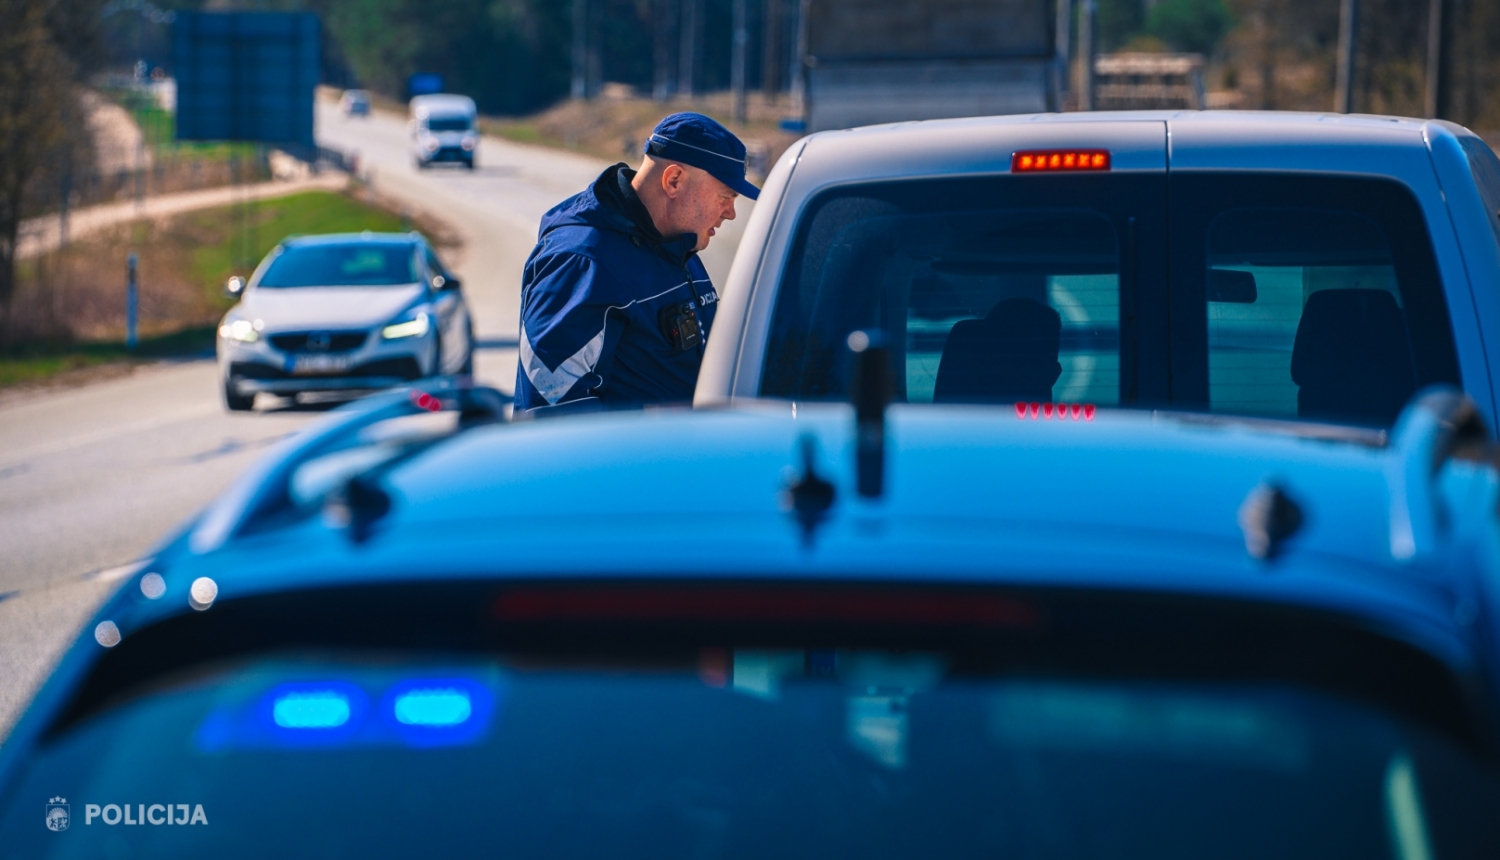 Roadpol maratona laikā Valsts policijas darbinieks apturējis kādu automašīnu